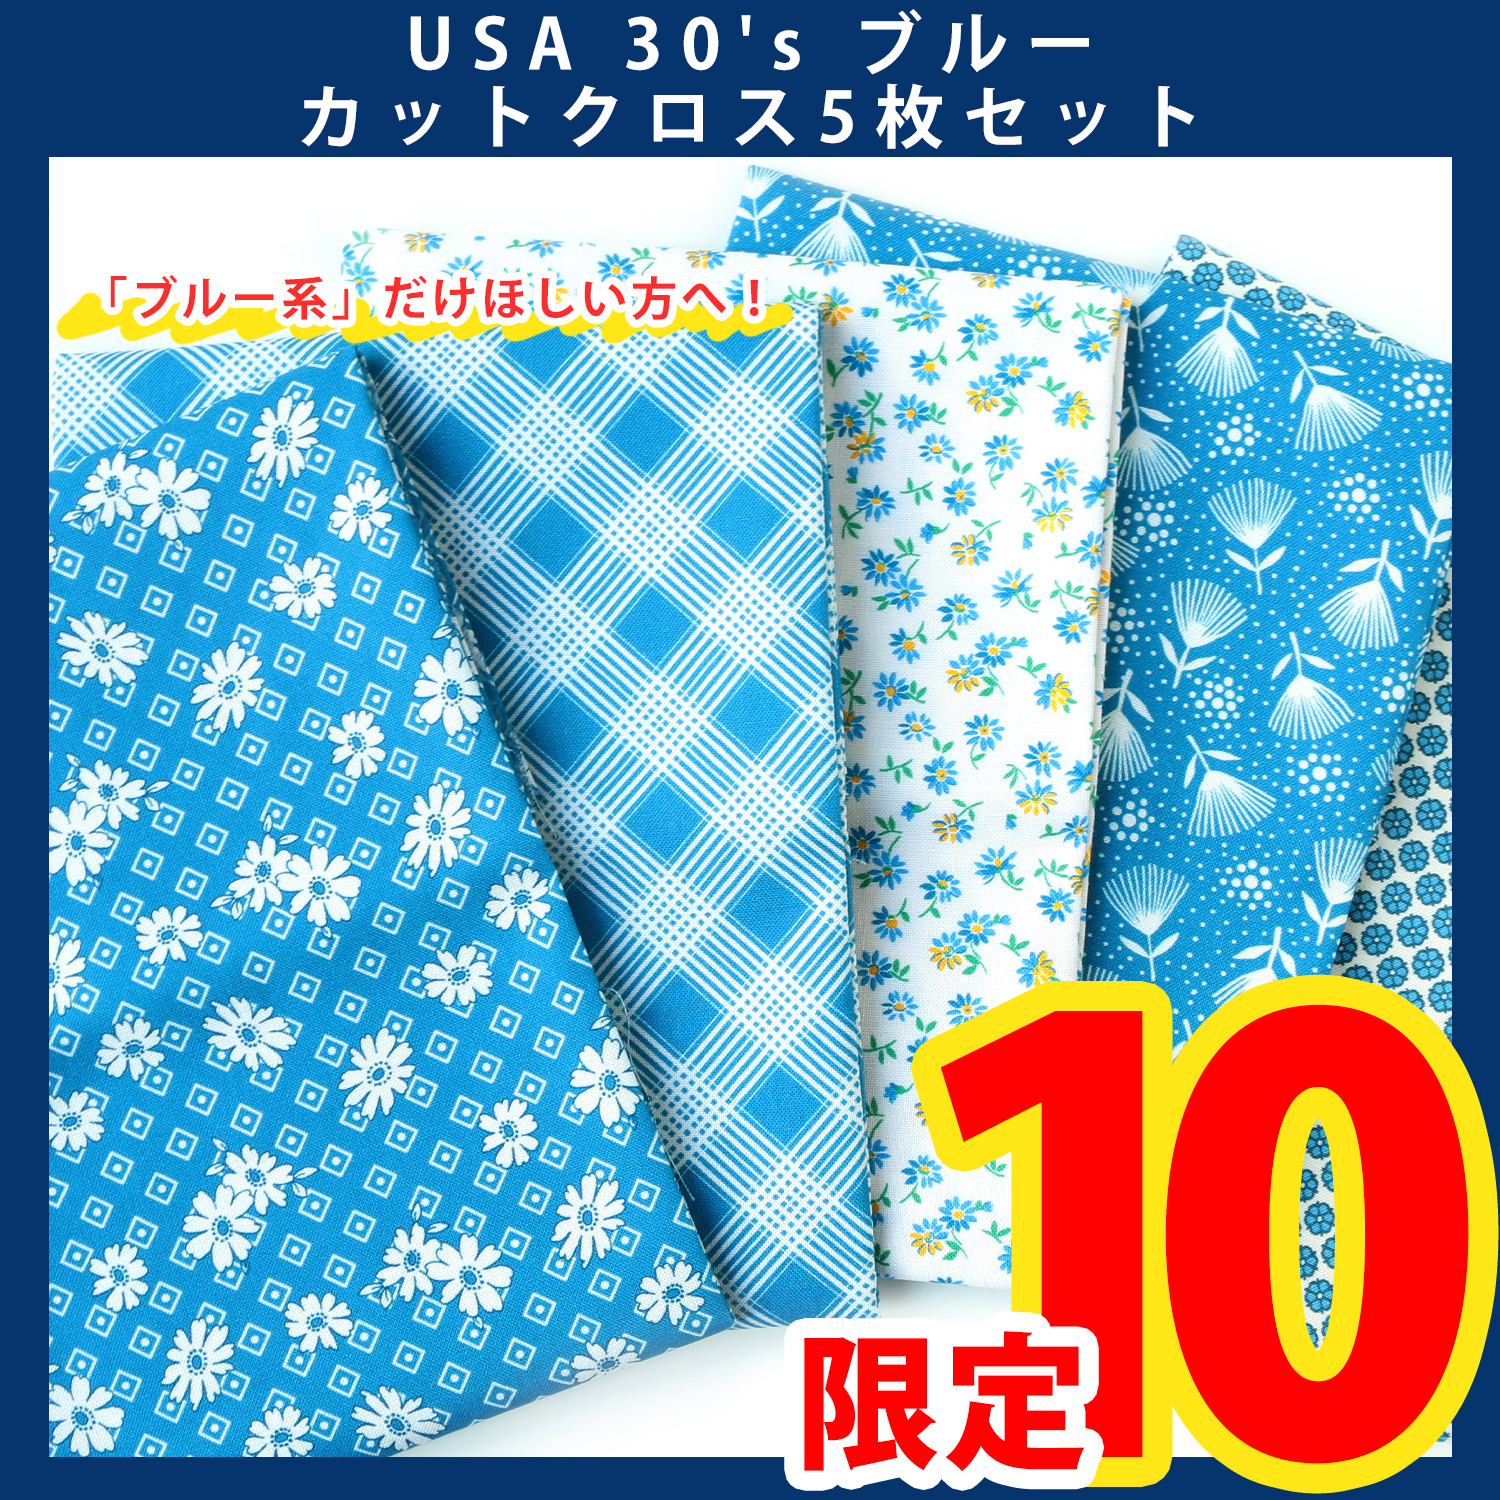 【第一弾】USA-30S-BLUE USA 30's ブルーセット カットクロス5枚入 (セット)